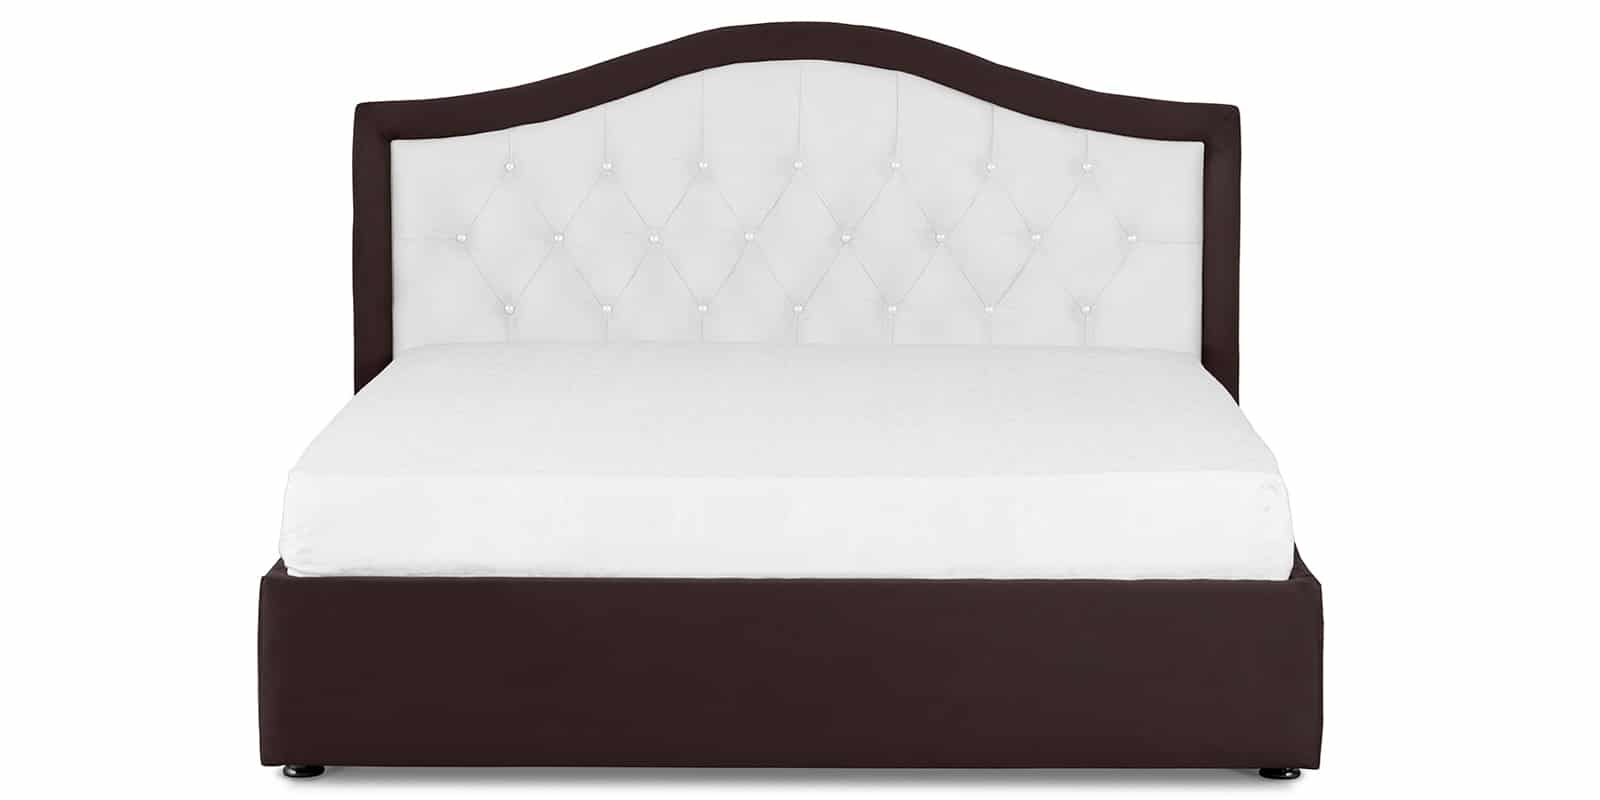 Мягкая кровать Малибу 160см экокожа белый-шоколад вариант 9 фото 3 | интернет-магазин Складно